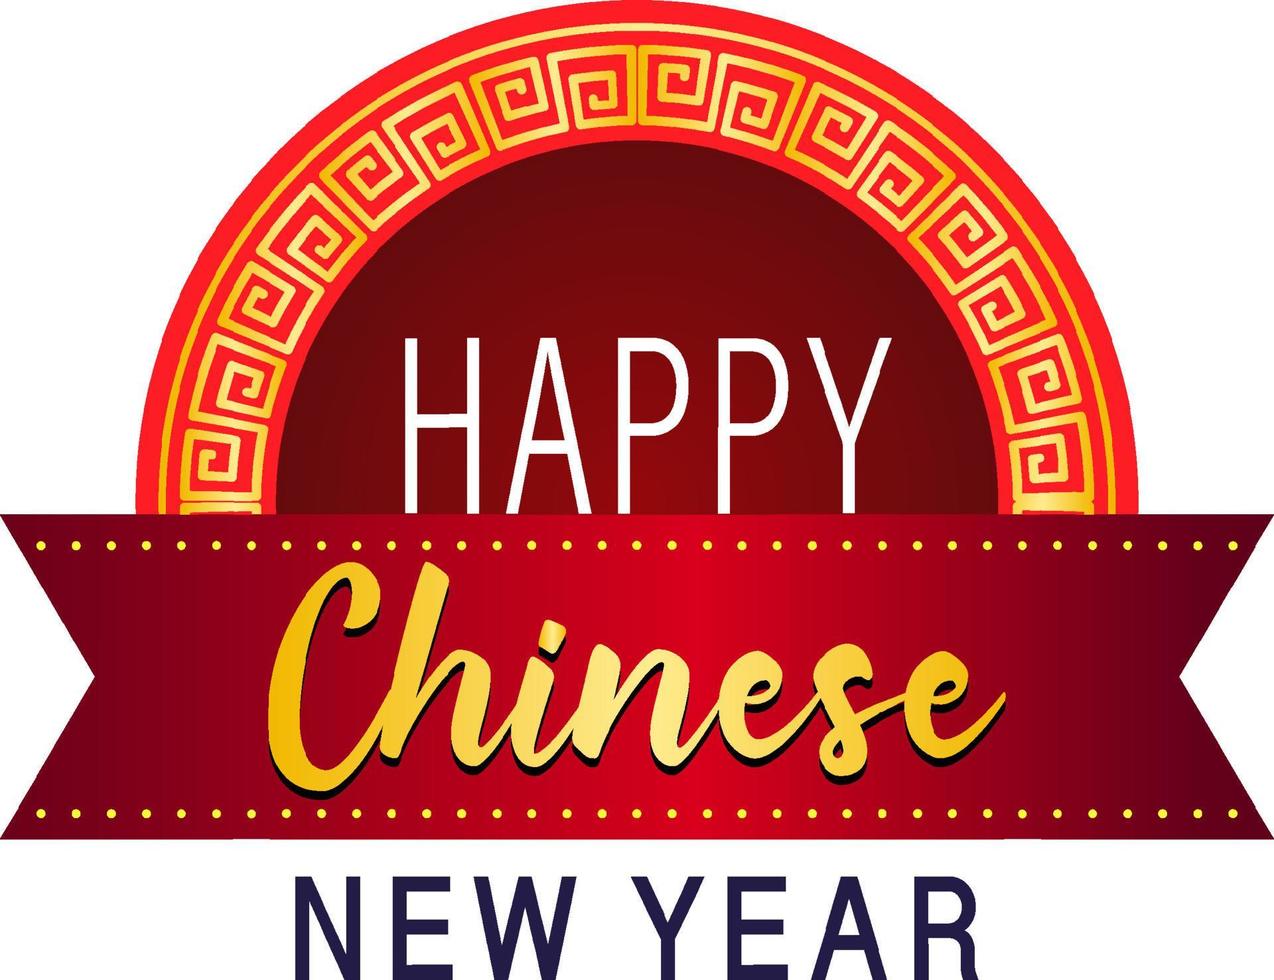 gott kinesiskt nytt år teckensnittsdesign i rött vektor